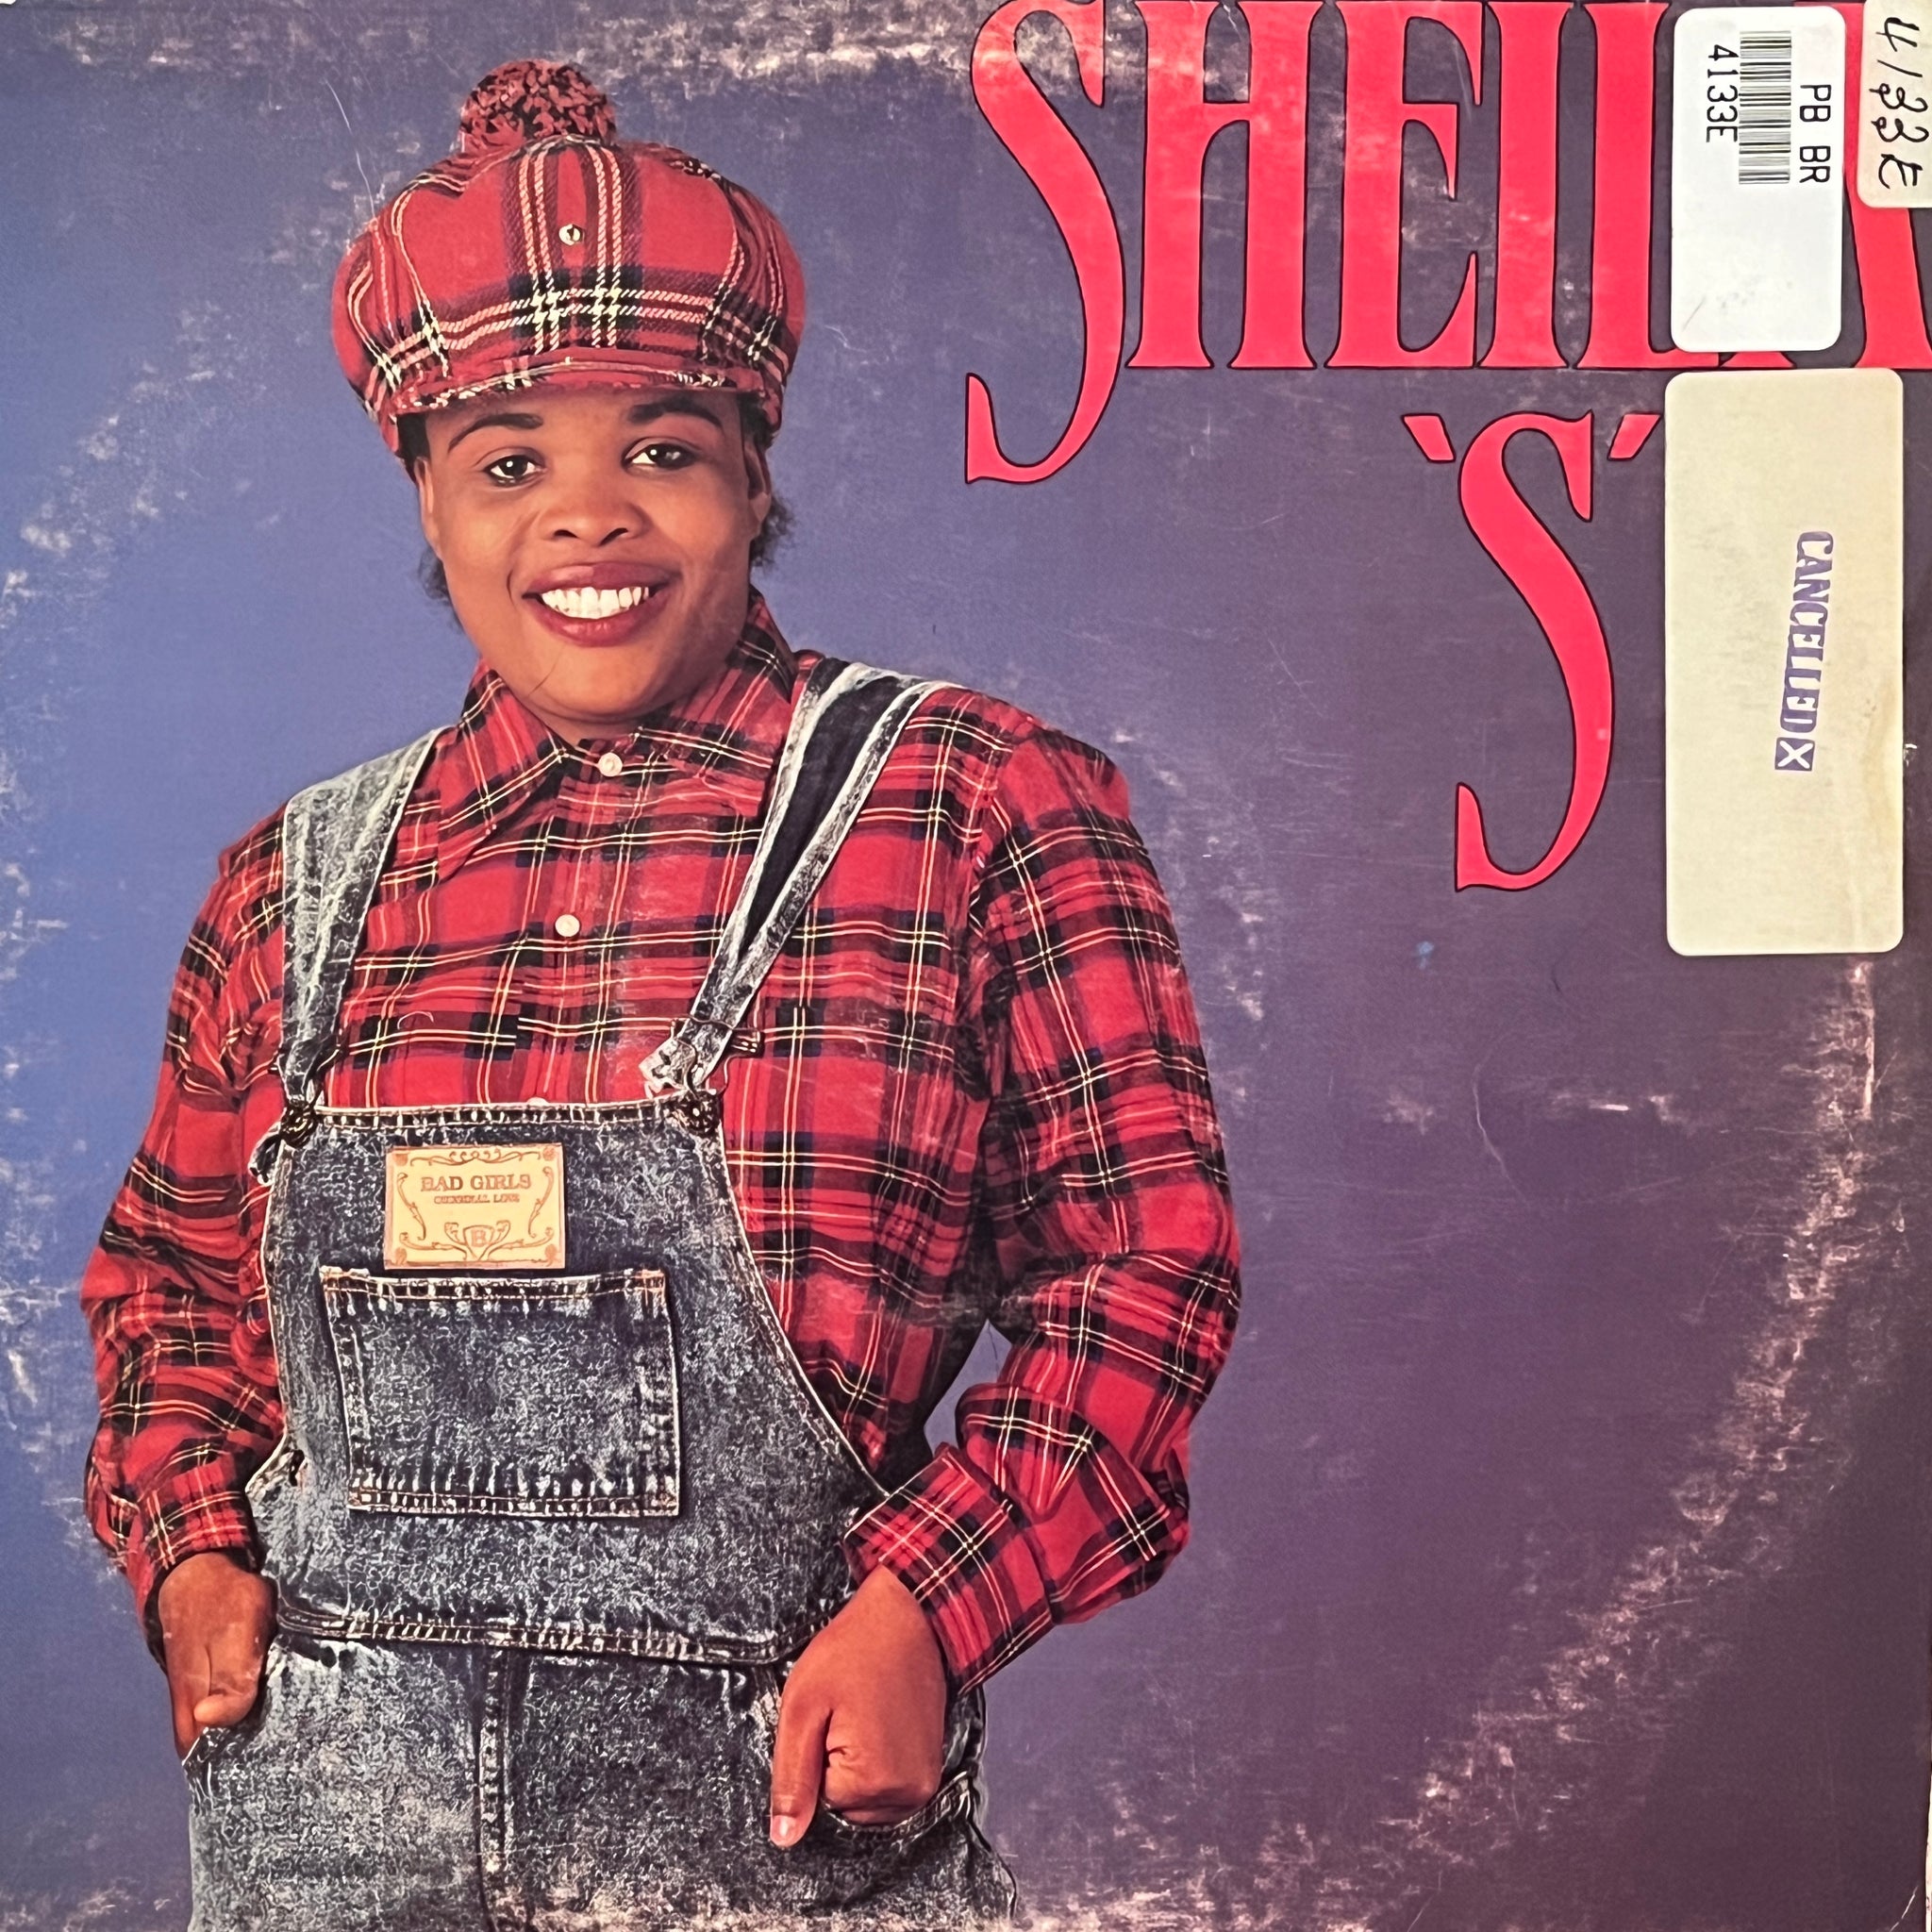 Sheila S – Sheila S